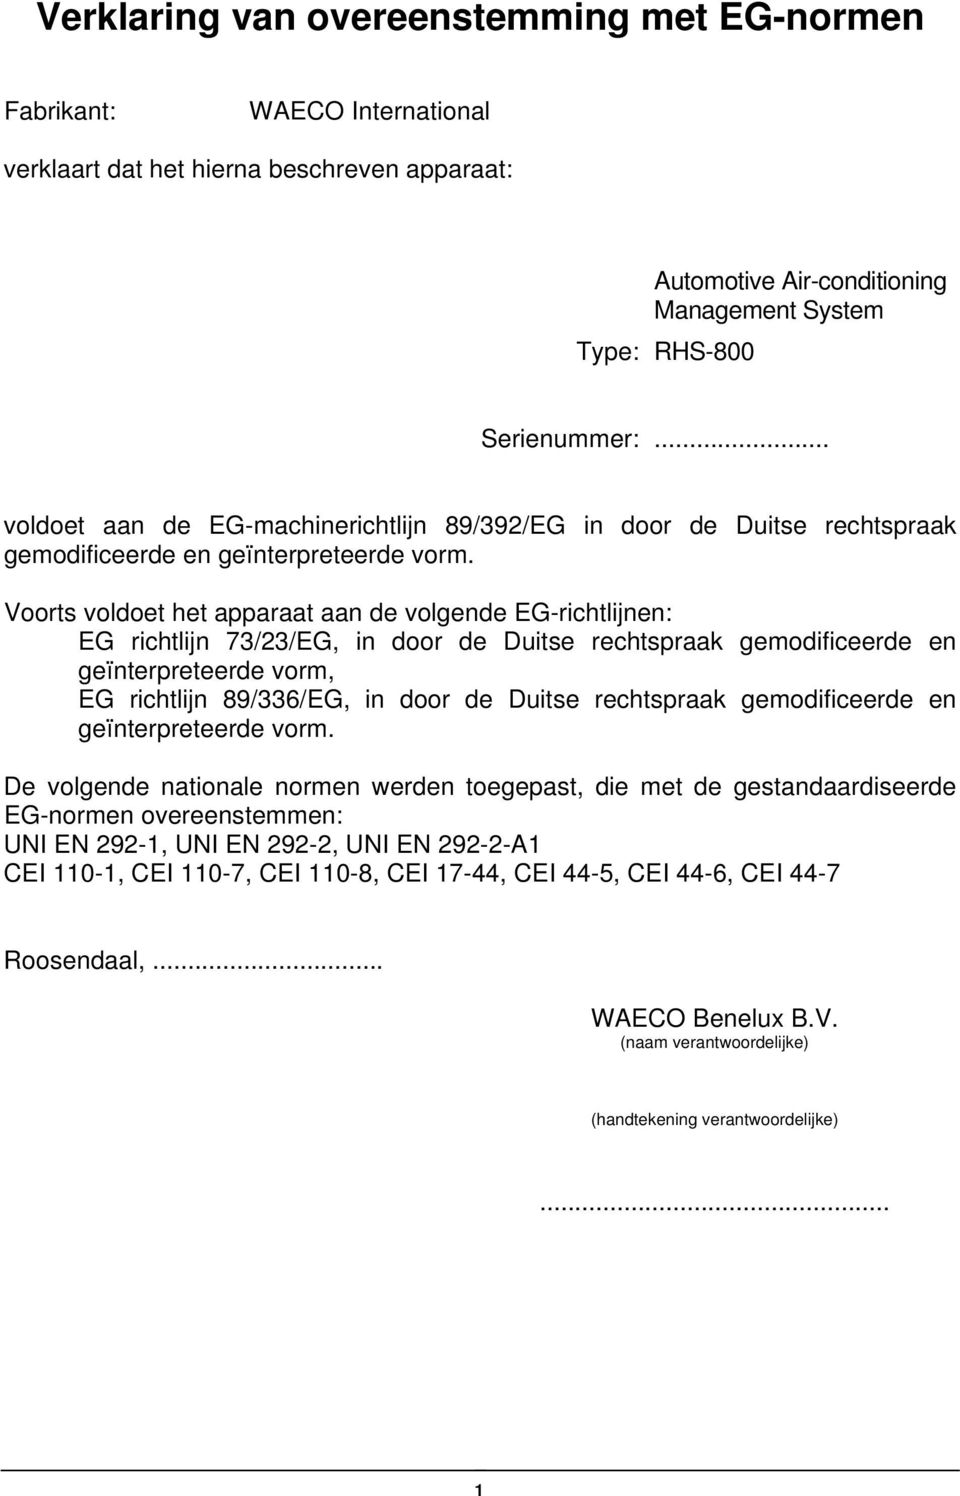 Voorts voldoet het apparaat aan de volgende EG-richtlijnen: EG richtlijn 73/23/EG, in door de Duitse rechtspraak gemodificeerde en geïnterpreteerde vorm, EG richtlijn 89/336/EG, in door de Duitse